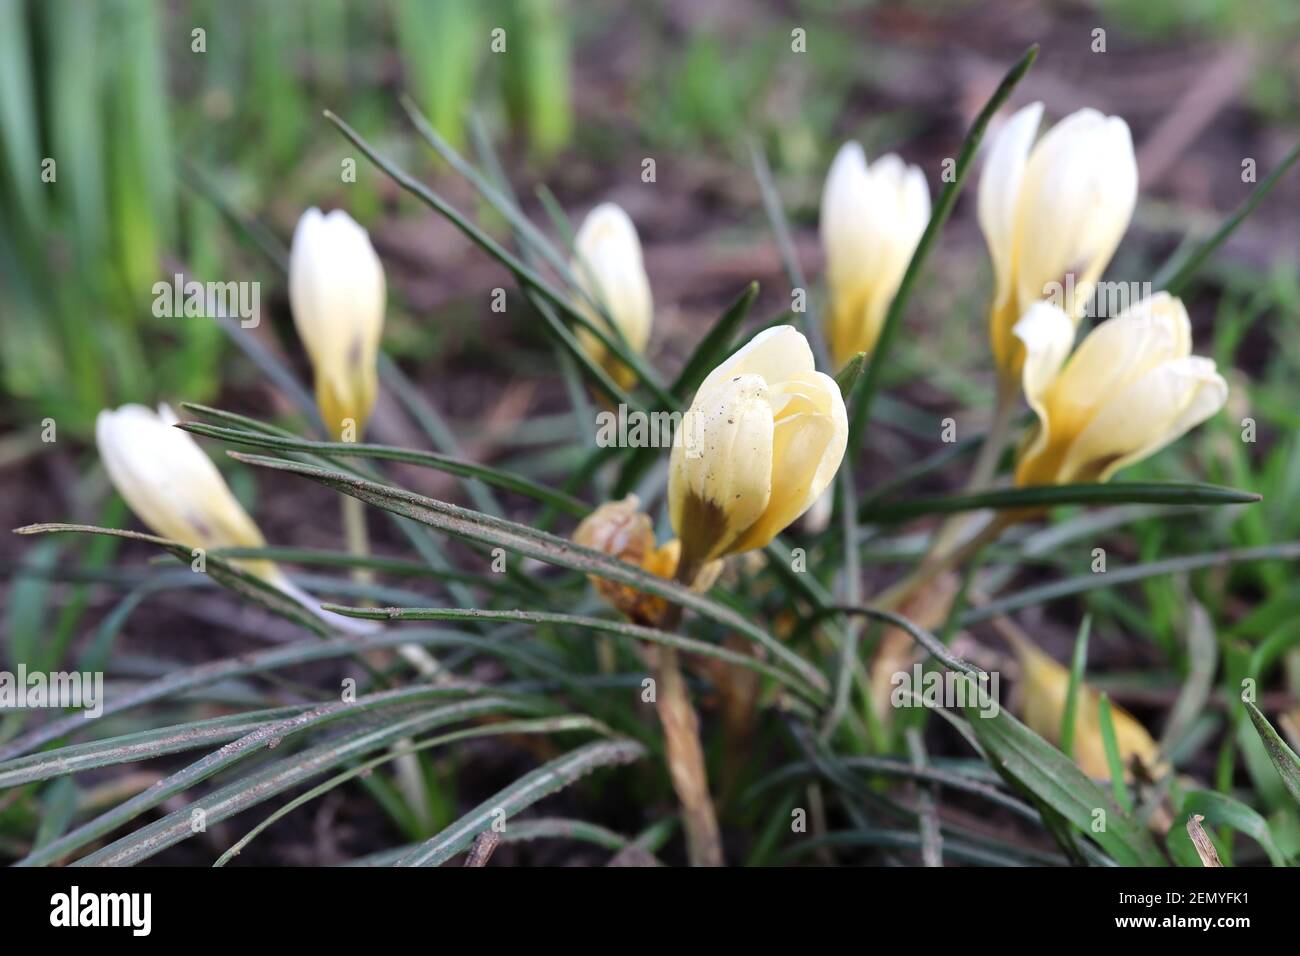 Crocus chrysanthus ‘Romance’ Crocus Romance – crocus nain aux pétales externes crémeux et jaune or à l’intérieur, février, Angleterre, Royaume-Uni Banque D'Images